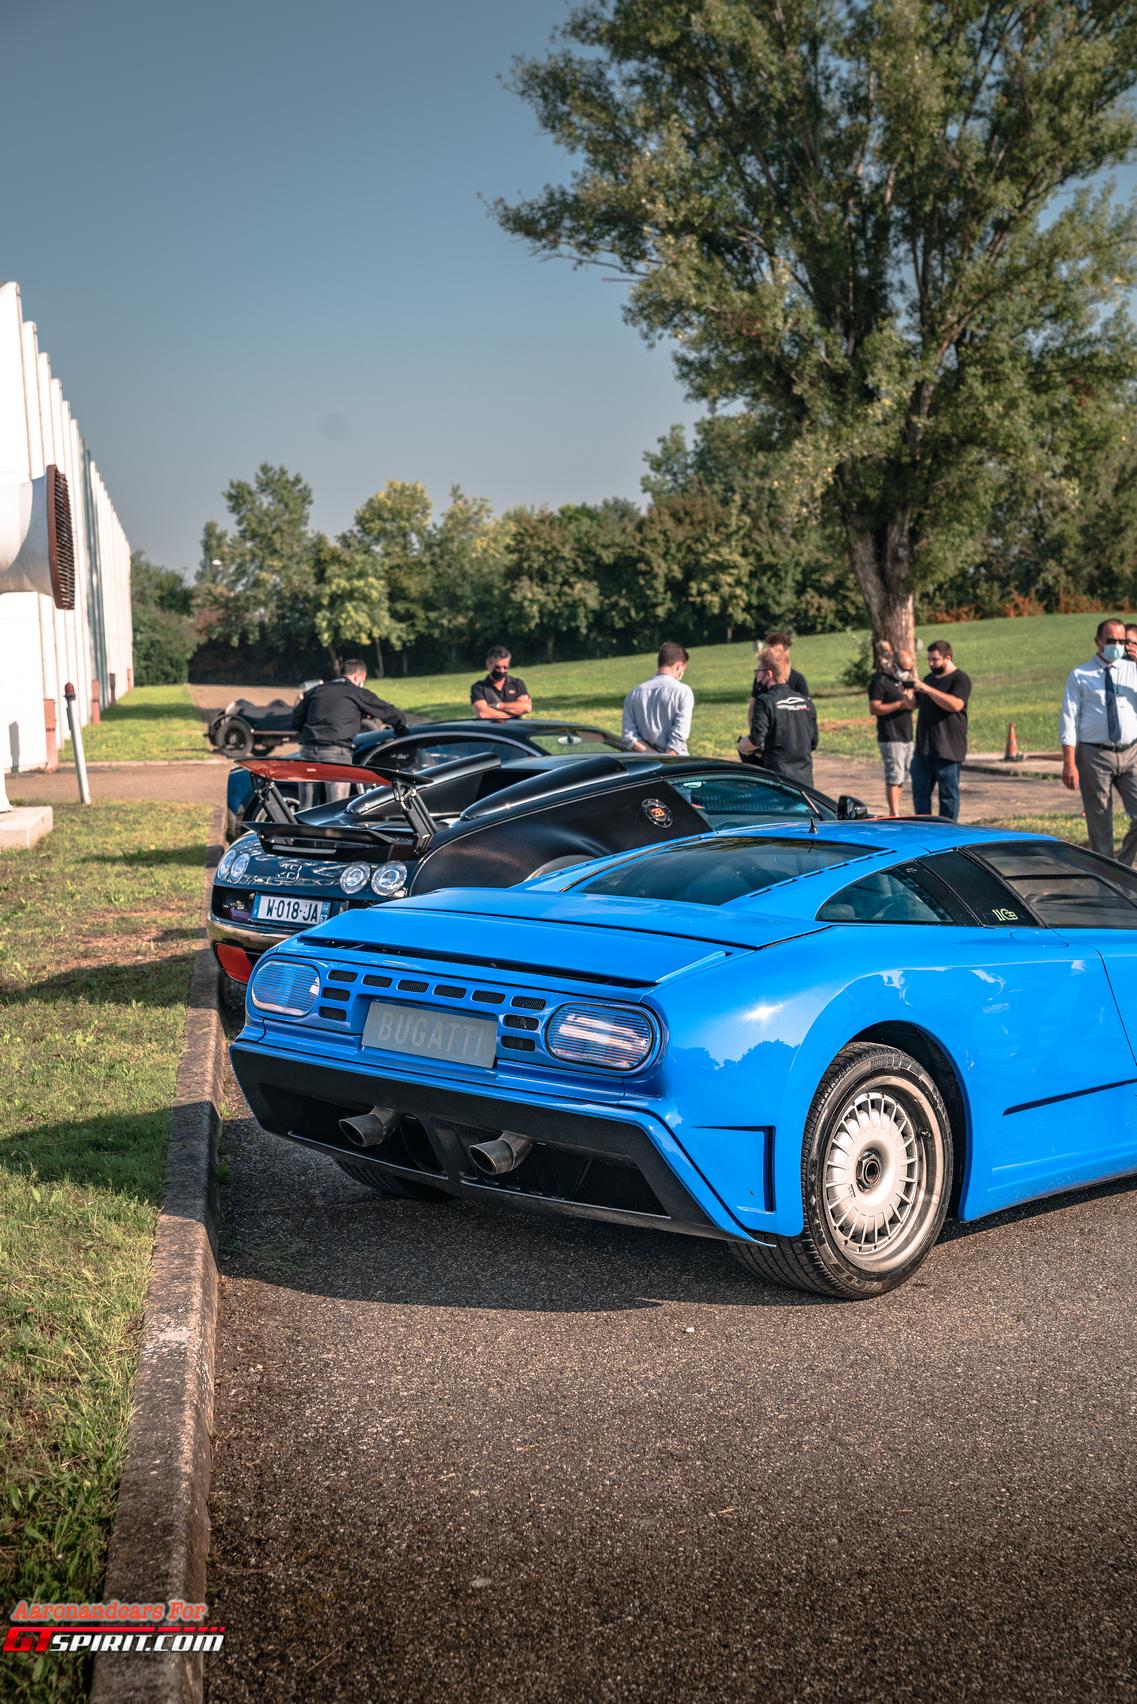 Стефан Винкельманн, нынешний президент Bugatti, был среди почетных гостей и в публичной речи выразил свою признательность Фабрике, подтвердив: «… Blue Factory установила стандарты в автомобильной промышленности в то время; это был скорее производител